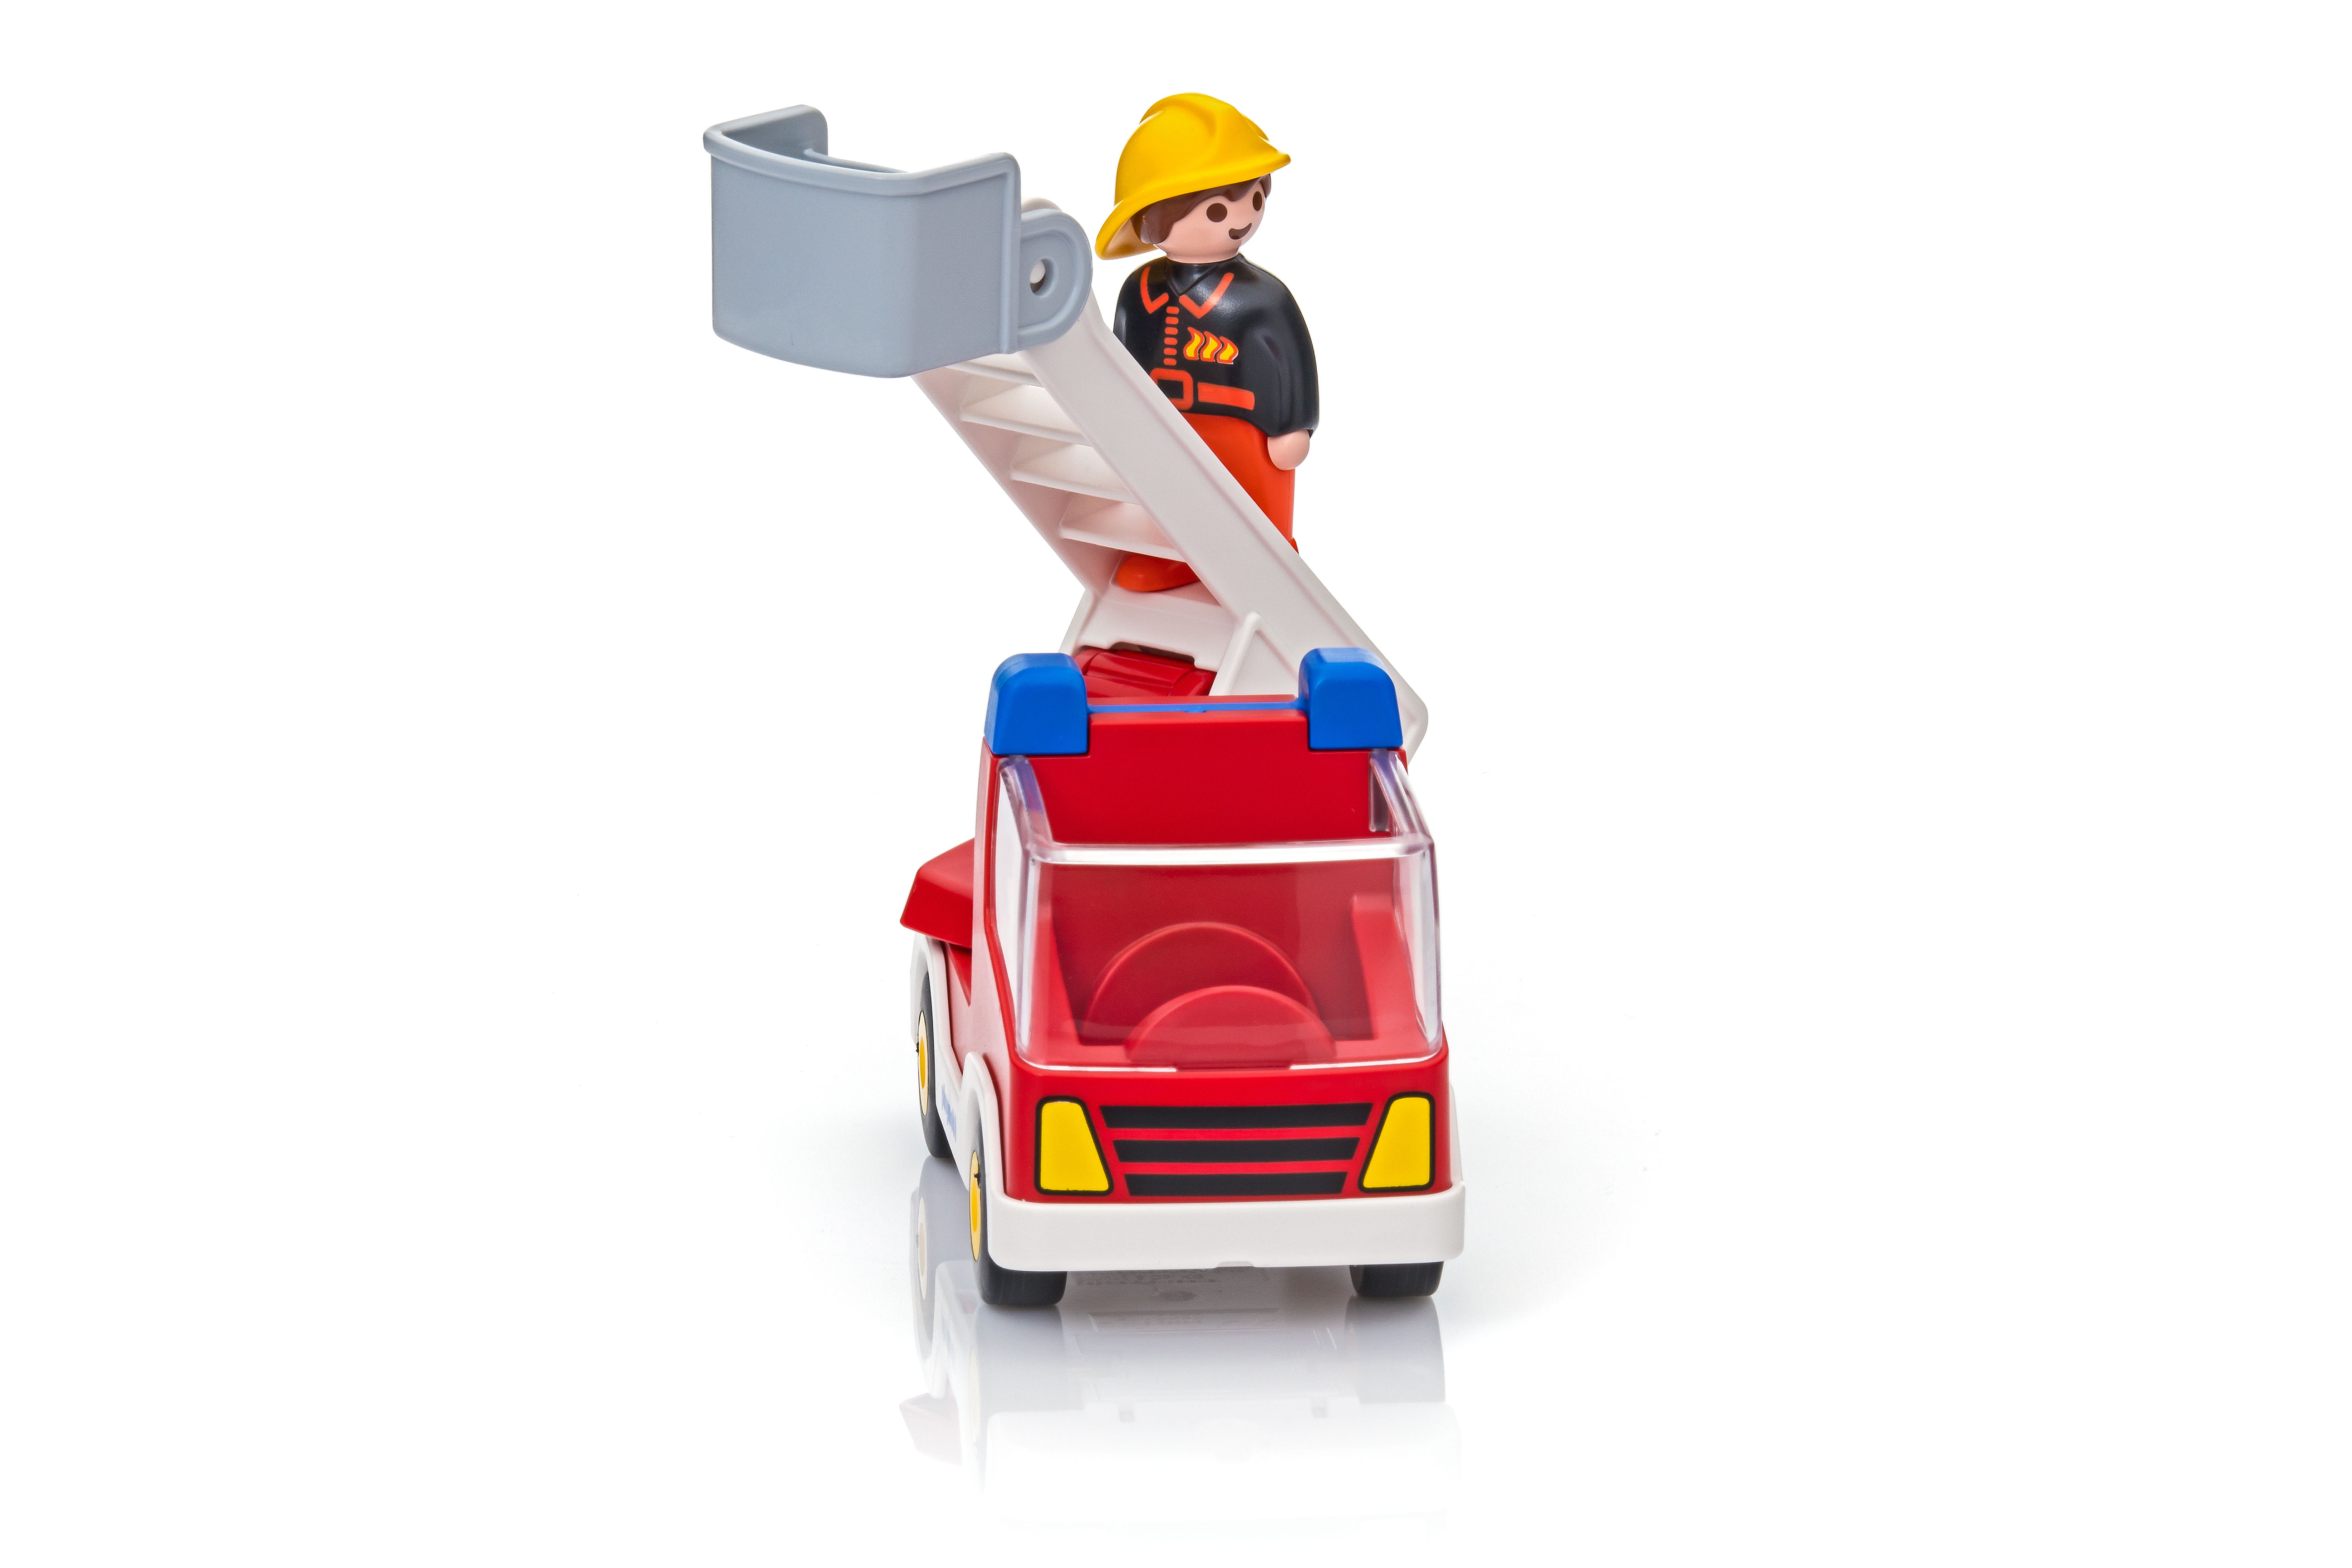 Playmobil 1.2.3 réf 6967 Camion de Pompier - Playmobil